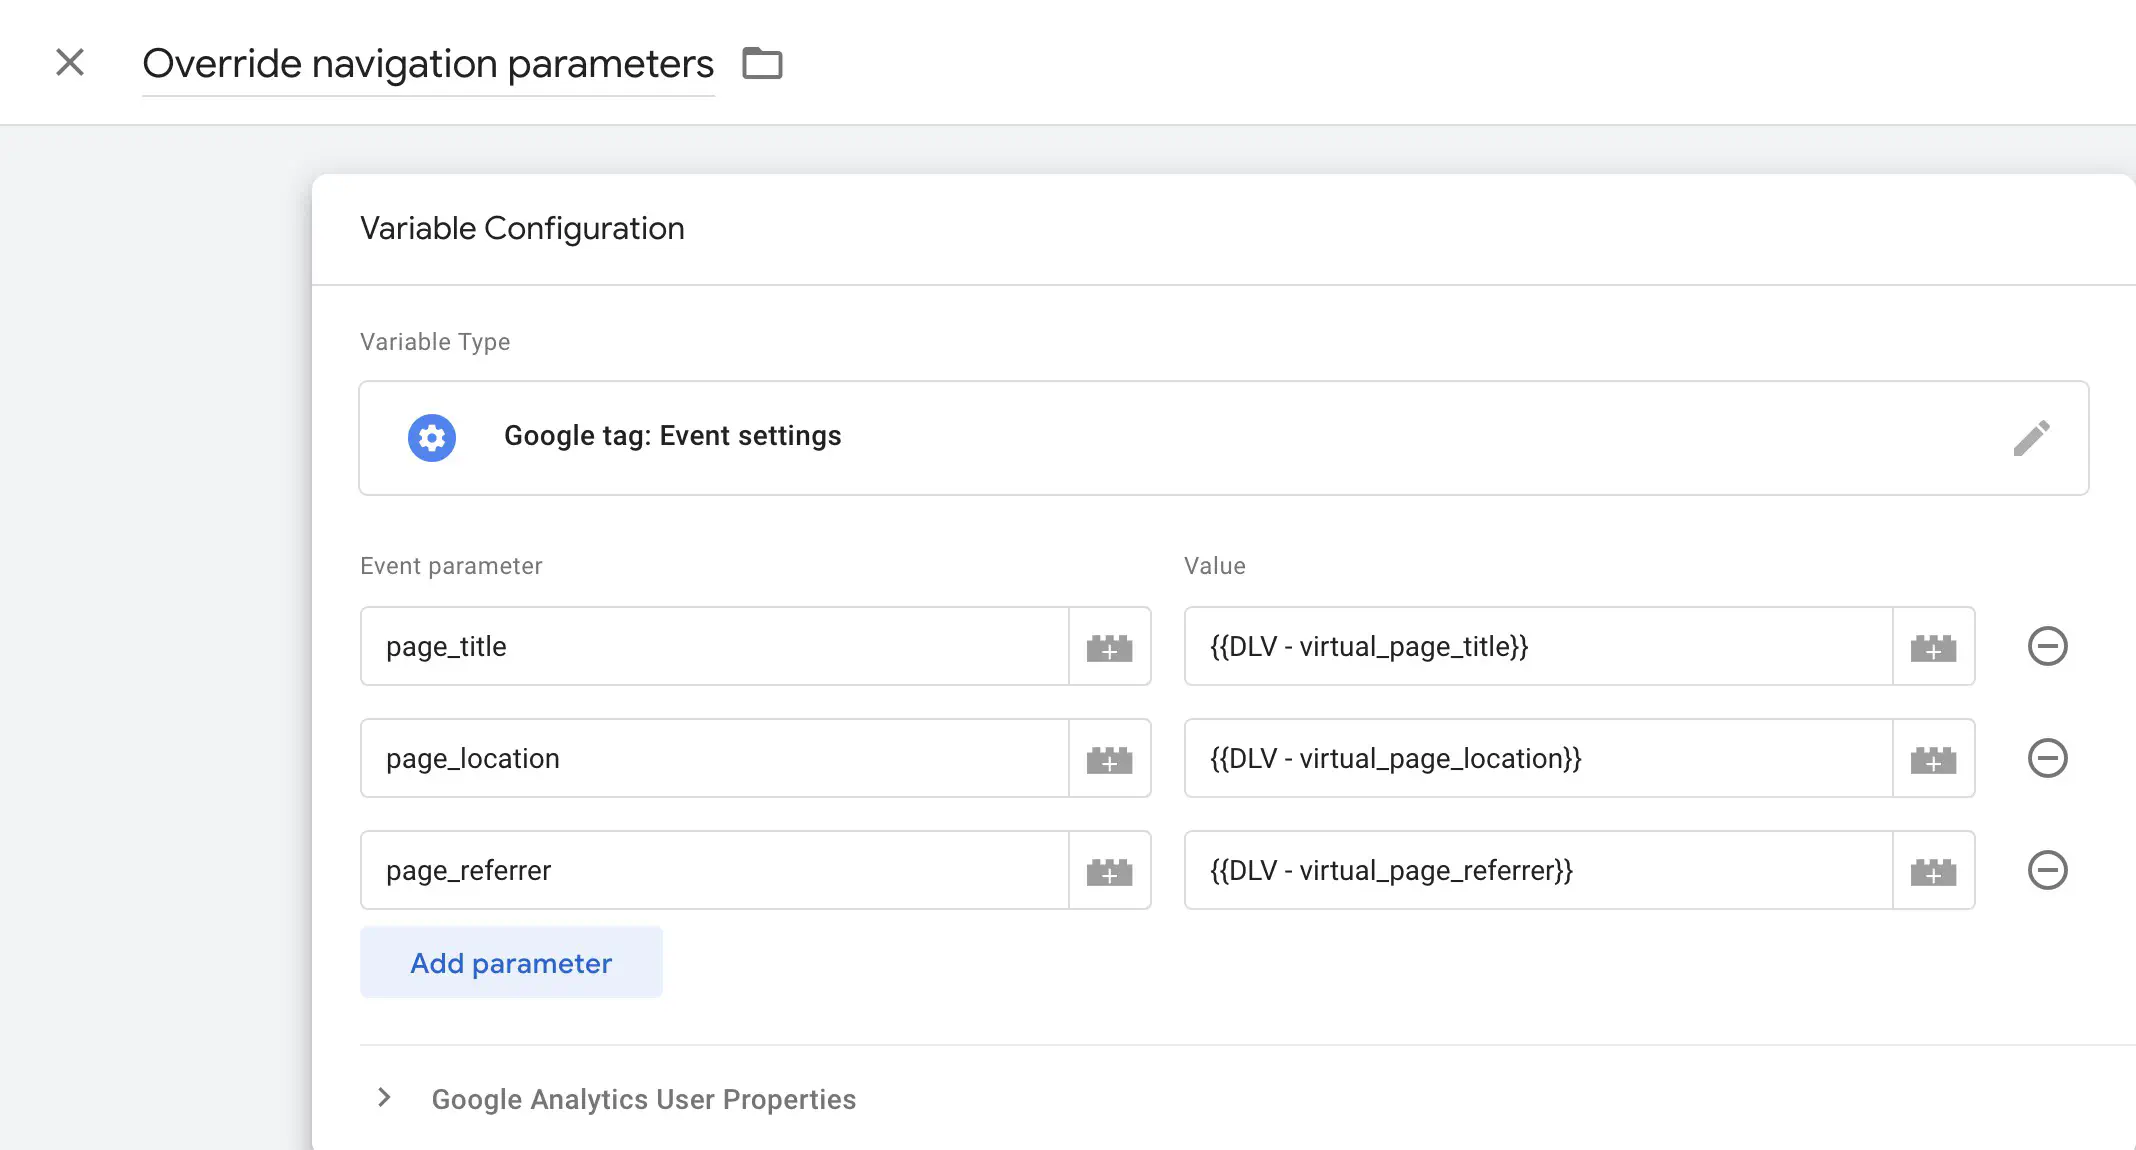 Utilisation de la variable Google tag: Event settings pour renseigner les paramètres page_title, page_location et page_referrer.